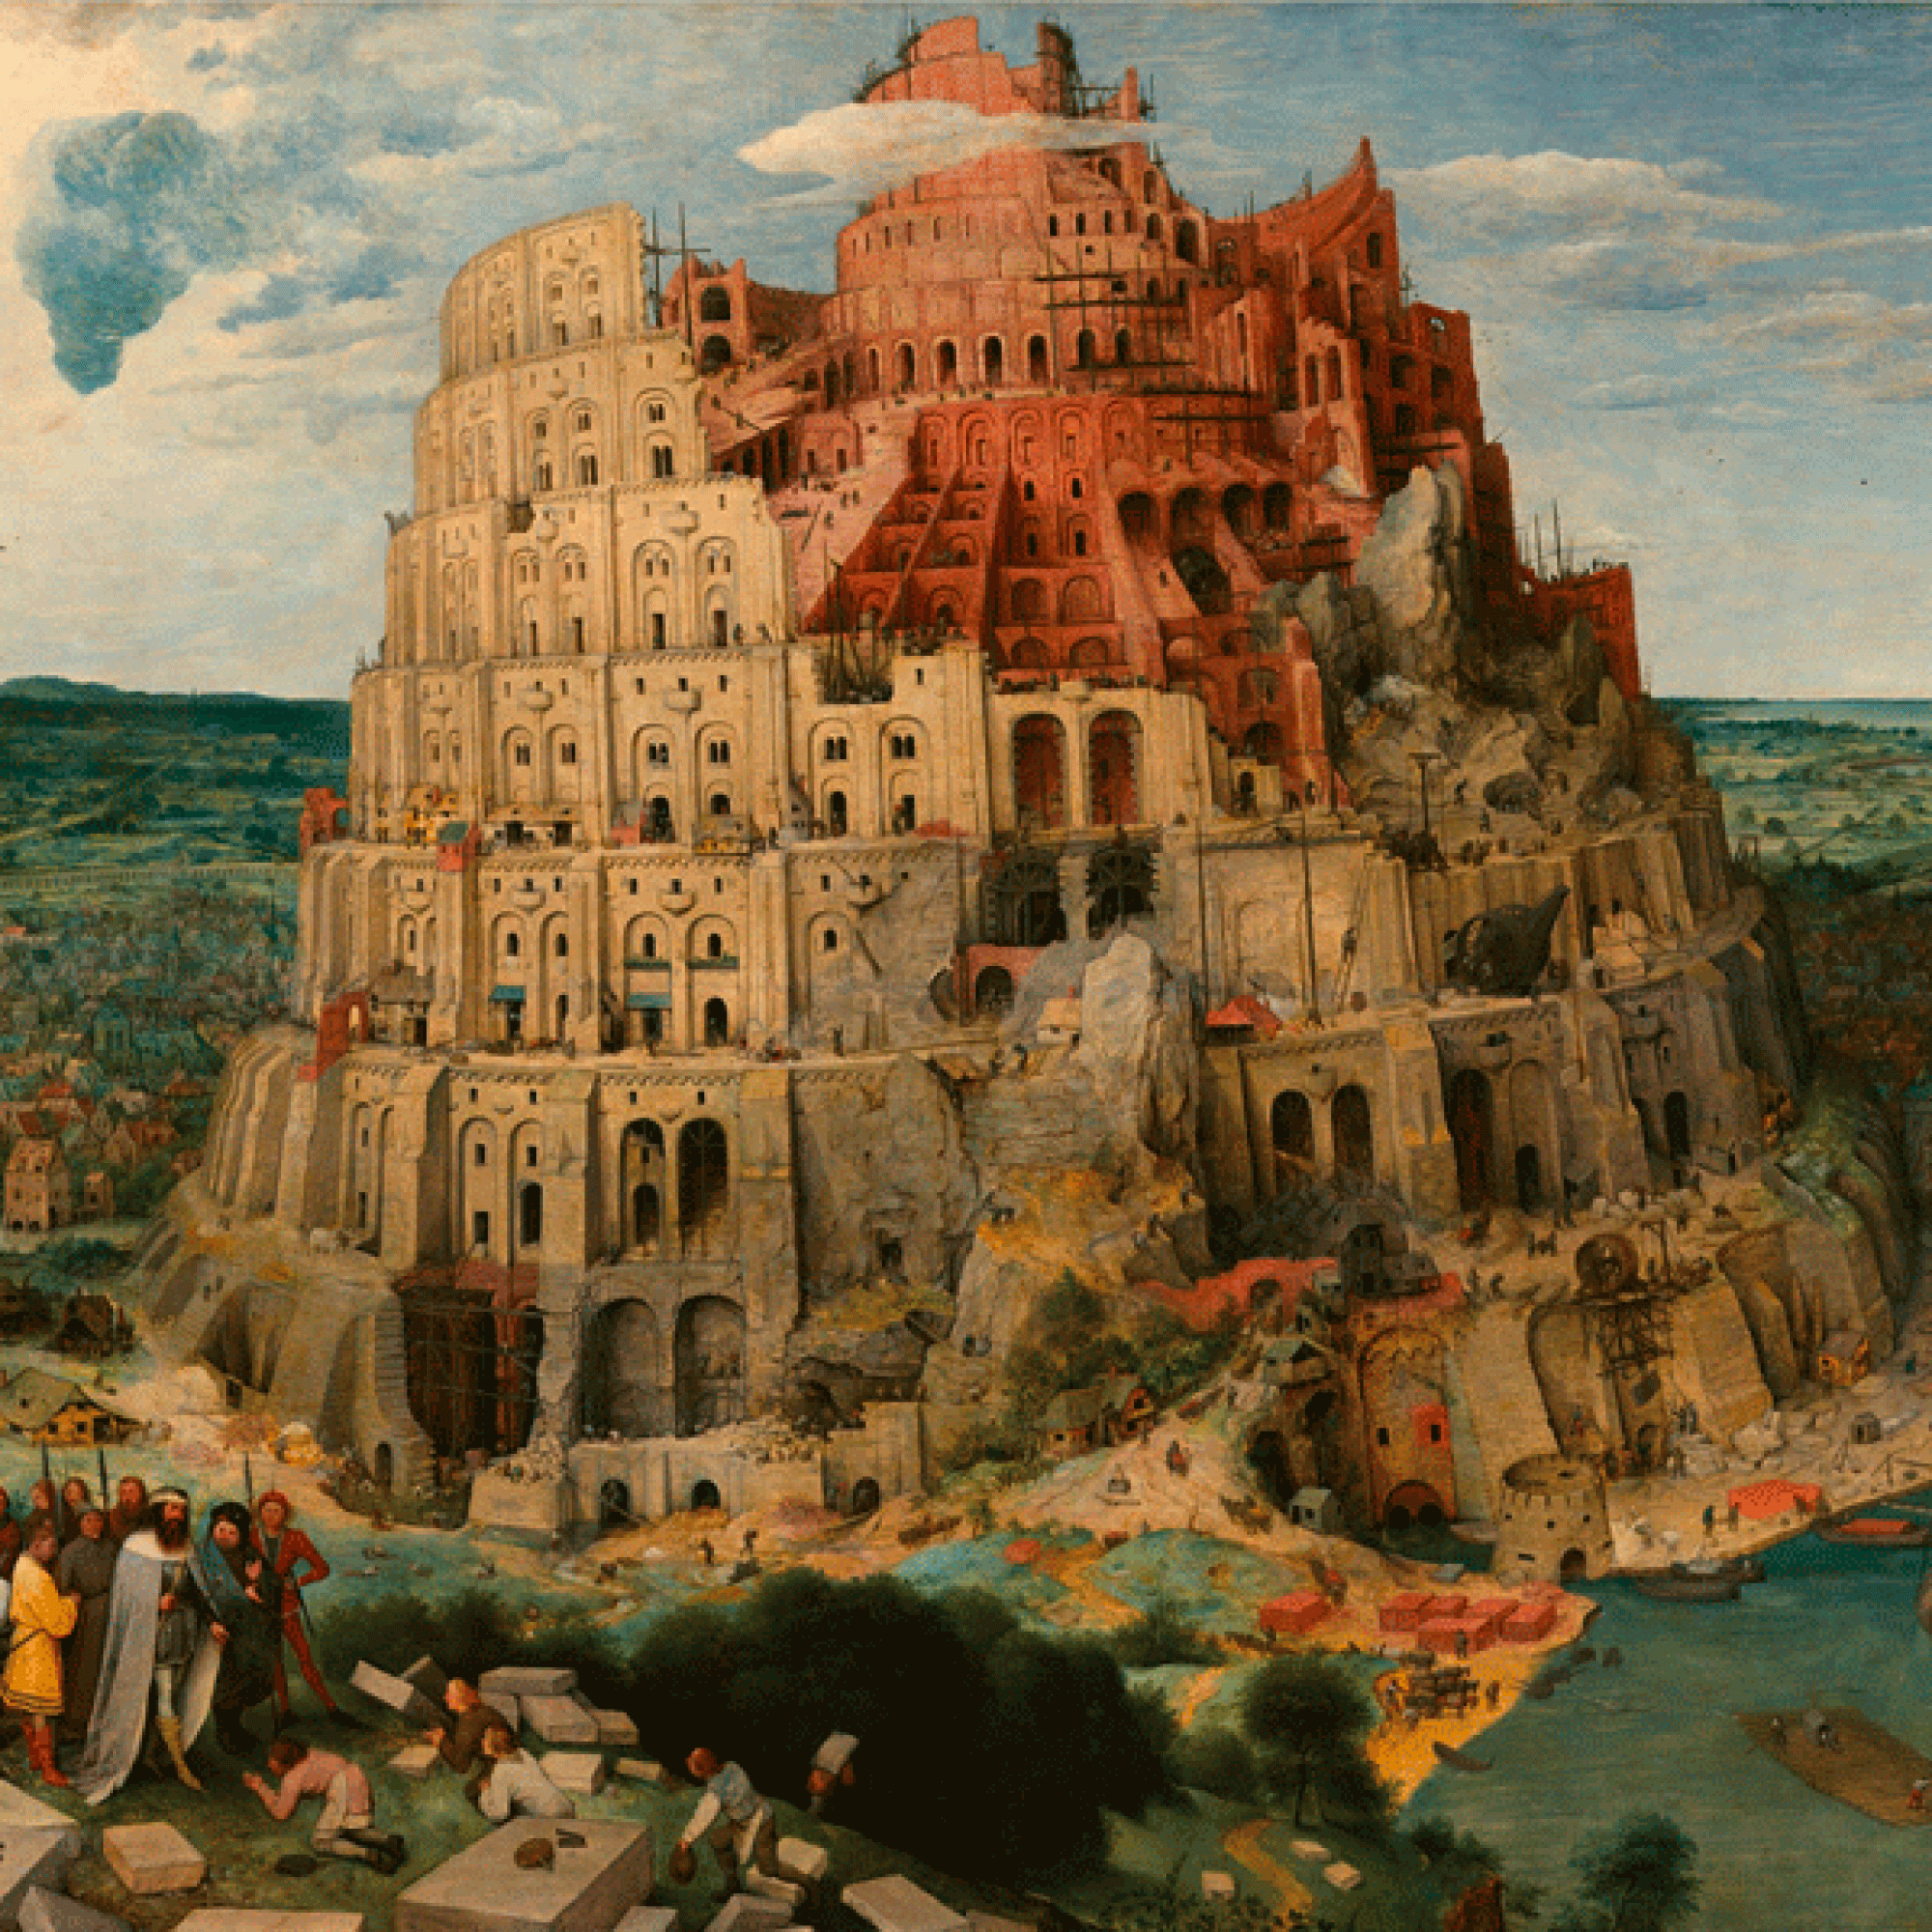 Der Turm zu Babel lieferte die Inspiration. Bild von Pieter Breugel, dem Älteren. (Google Art Project)